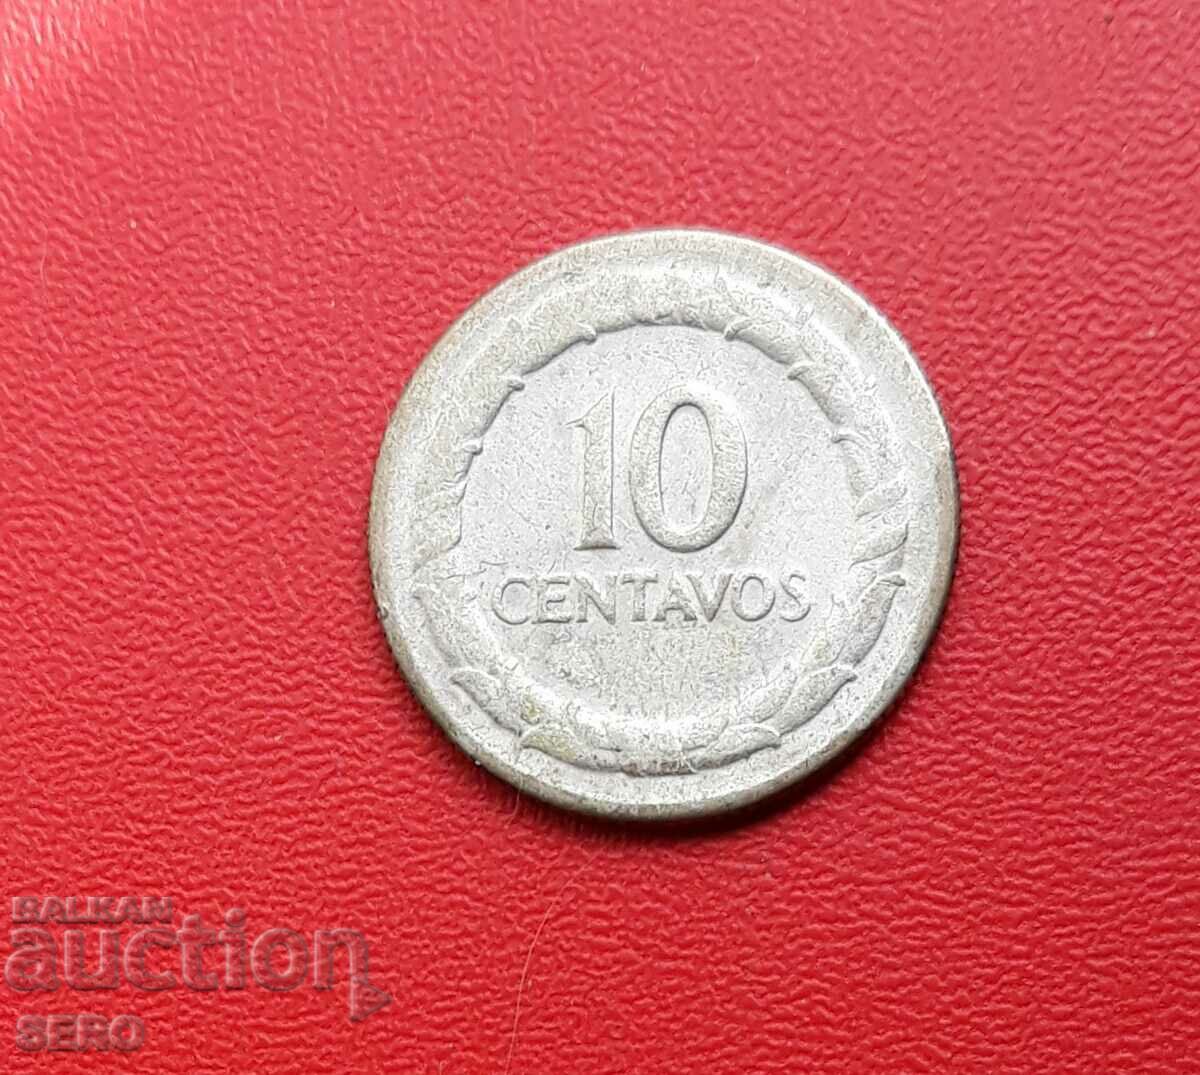 Colombia-10 centavos 1951-silver